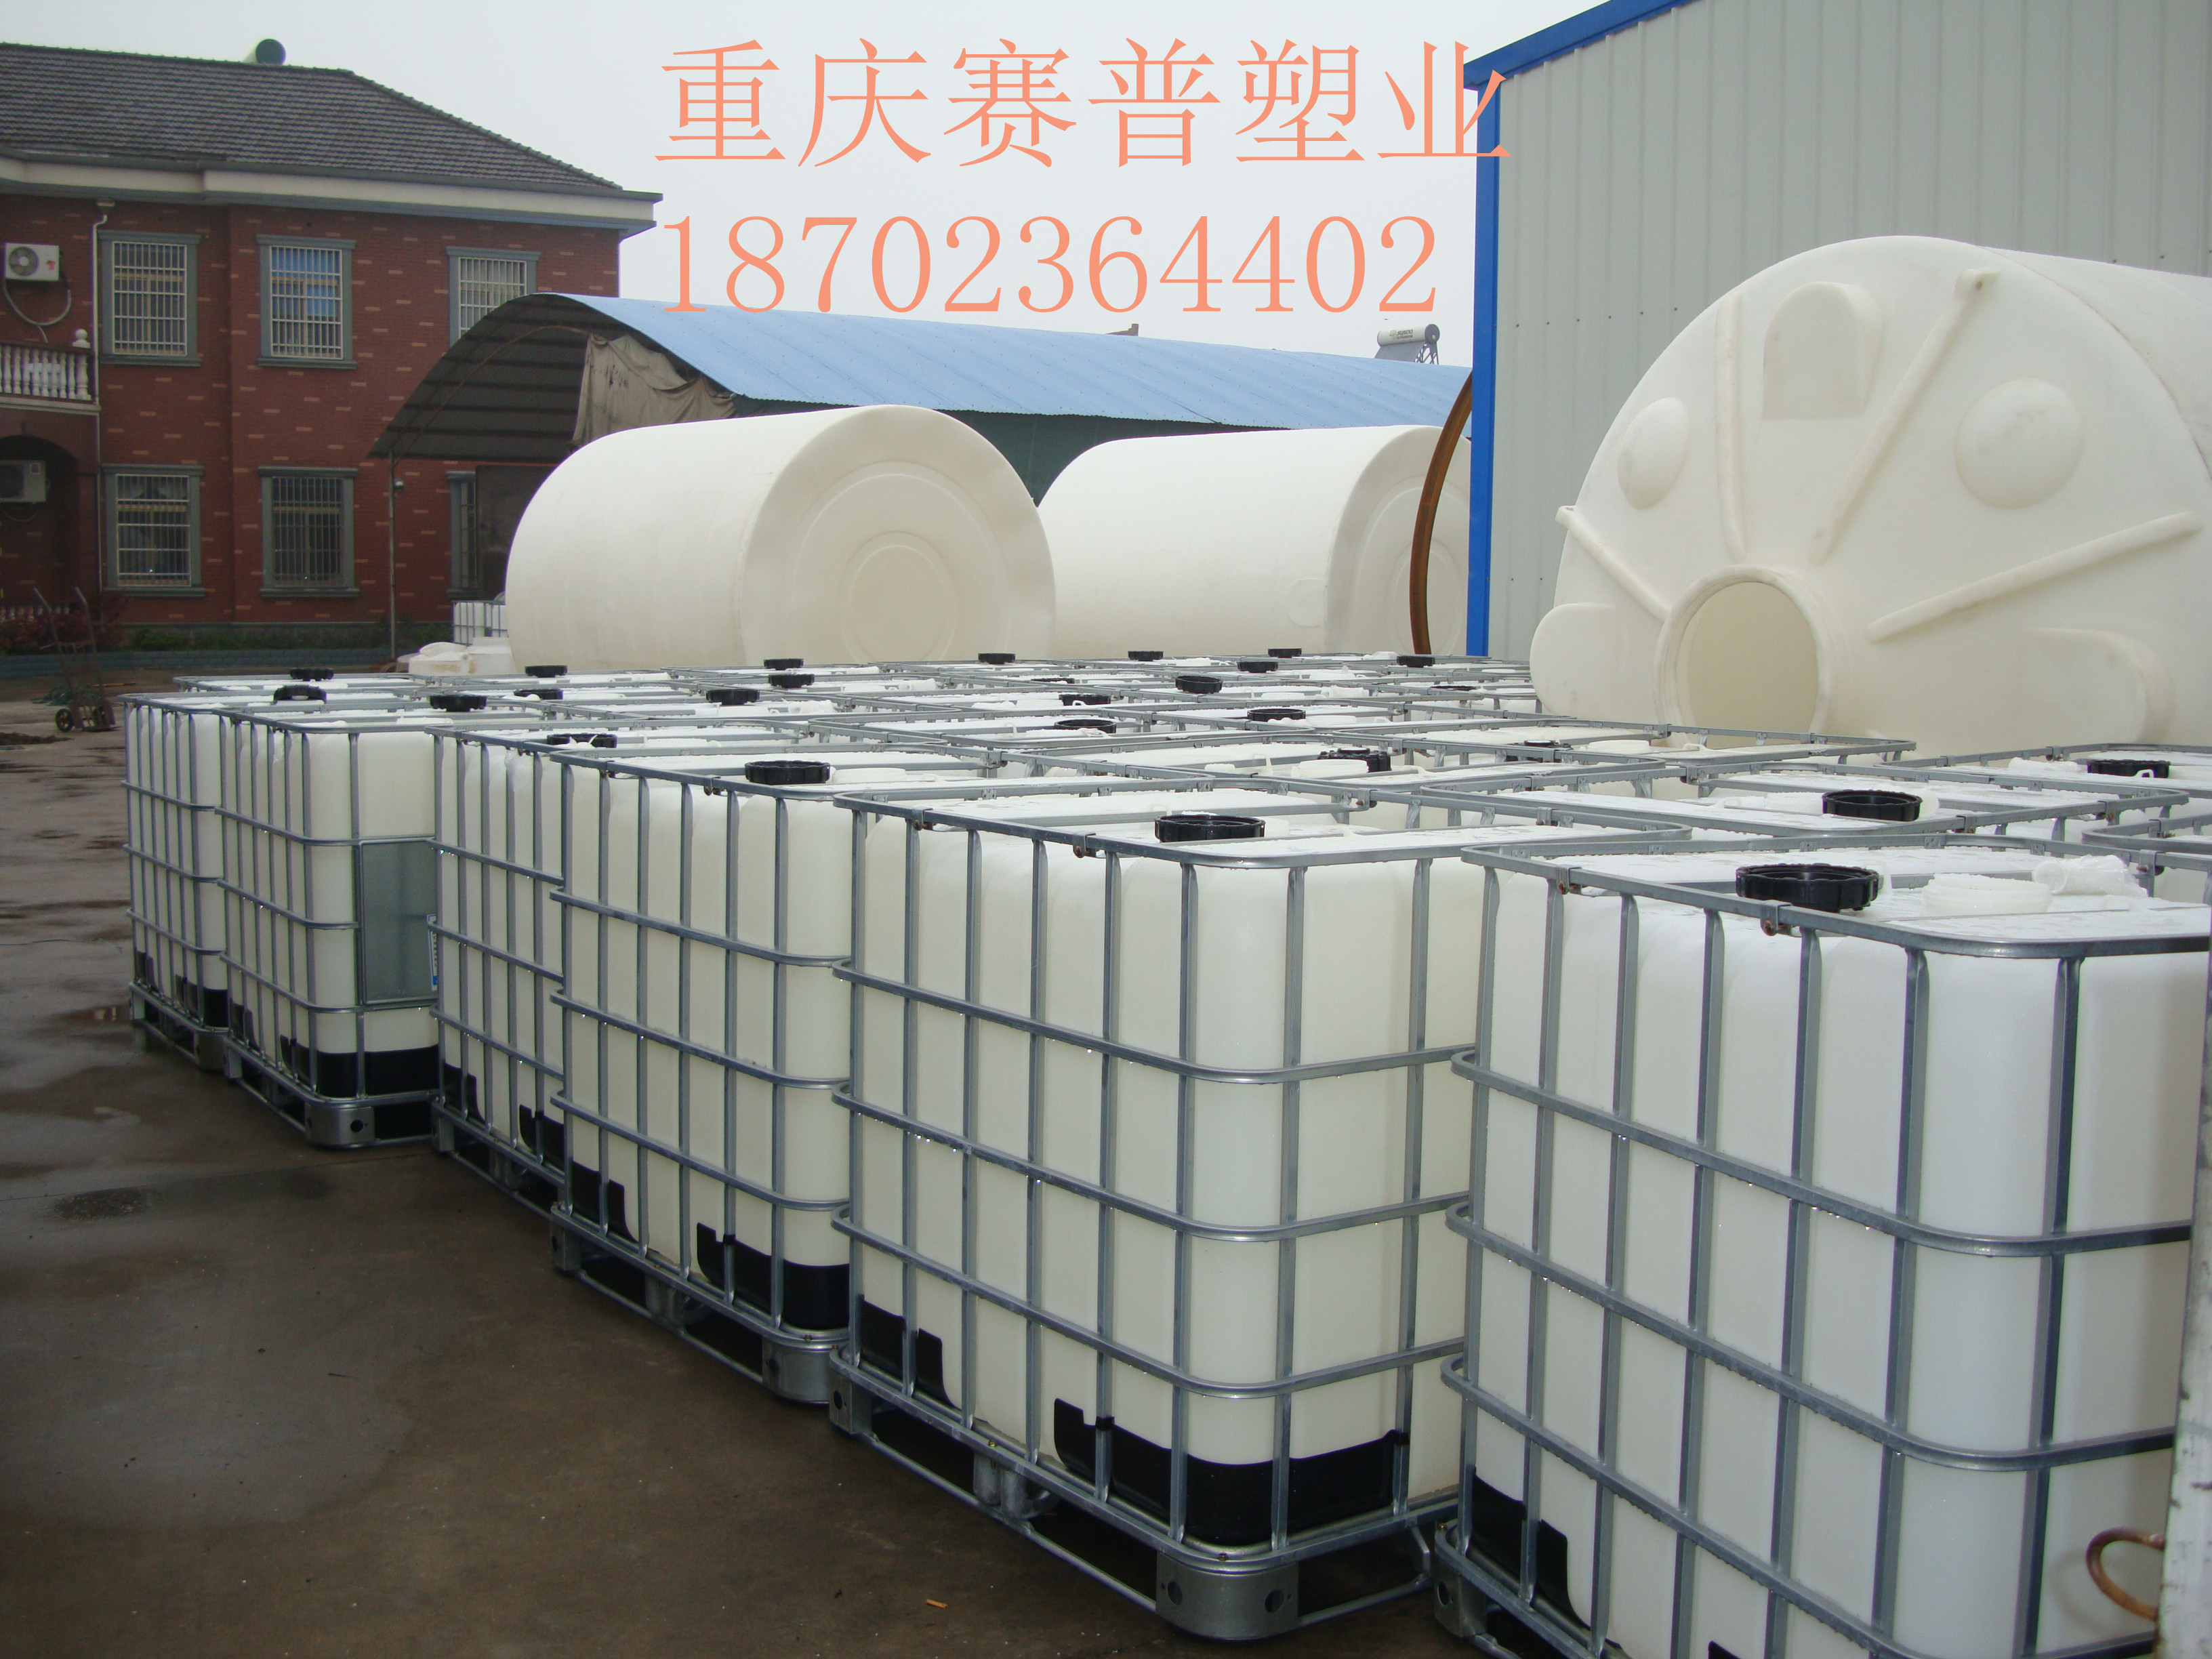 厂家直销吨桶|化工桶|IBC化工桶|千升桶 IBC吨桶